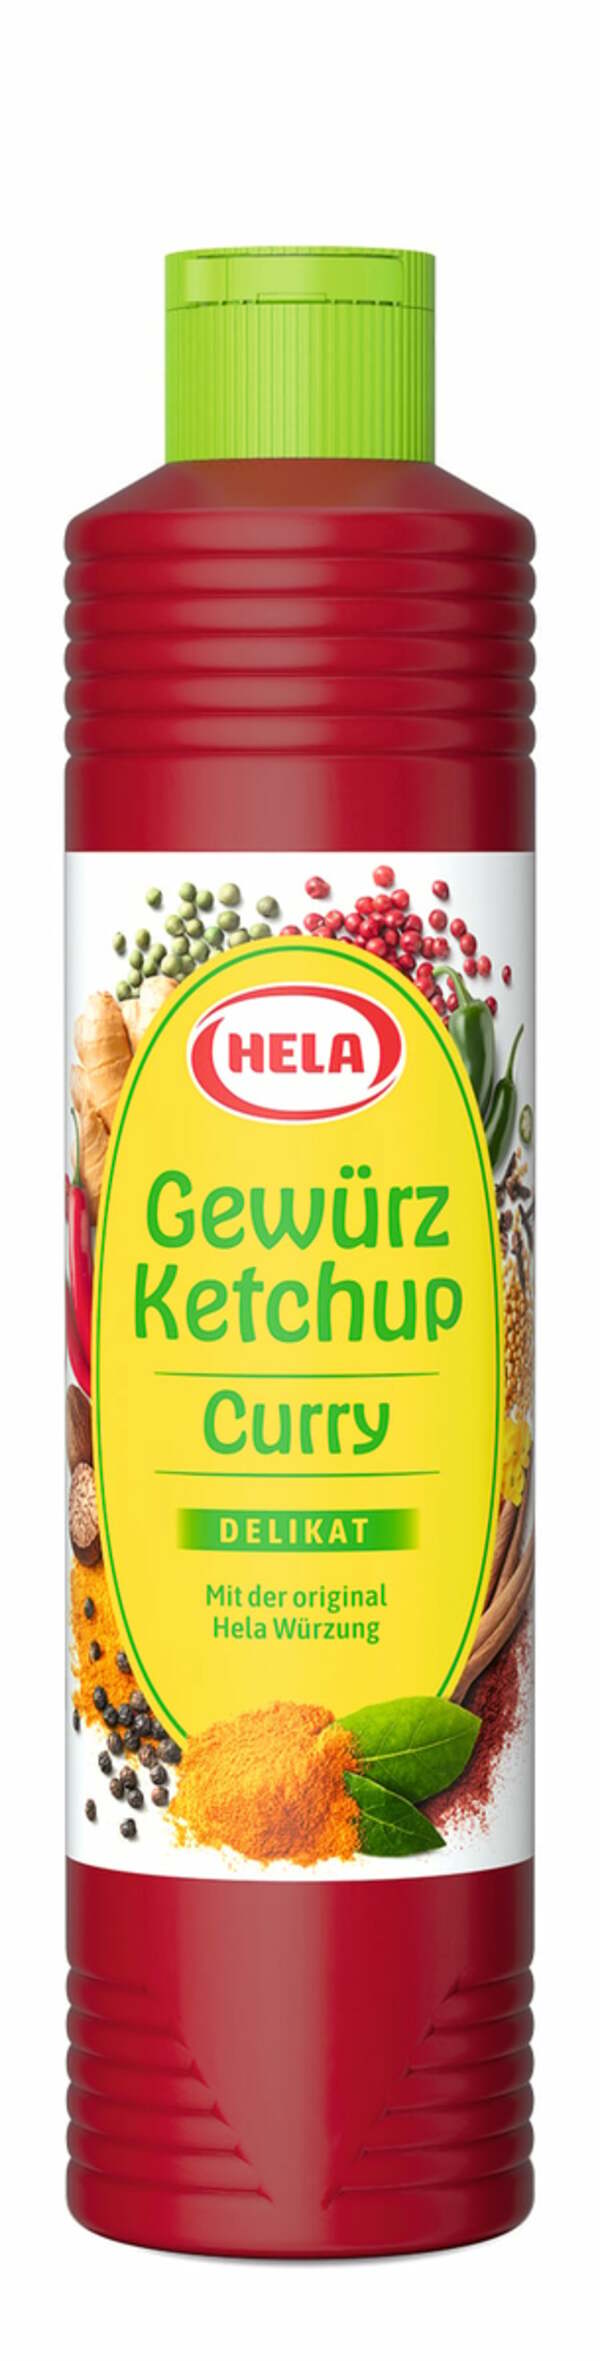 Bild 1 von Gewürz-Ketchup 'Curry' 800ml